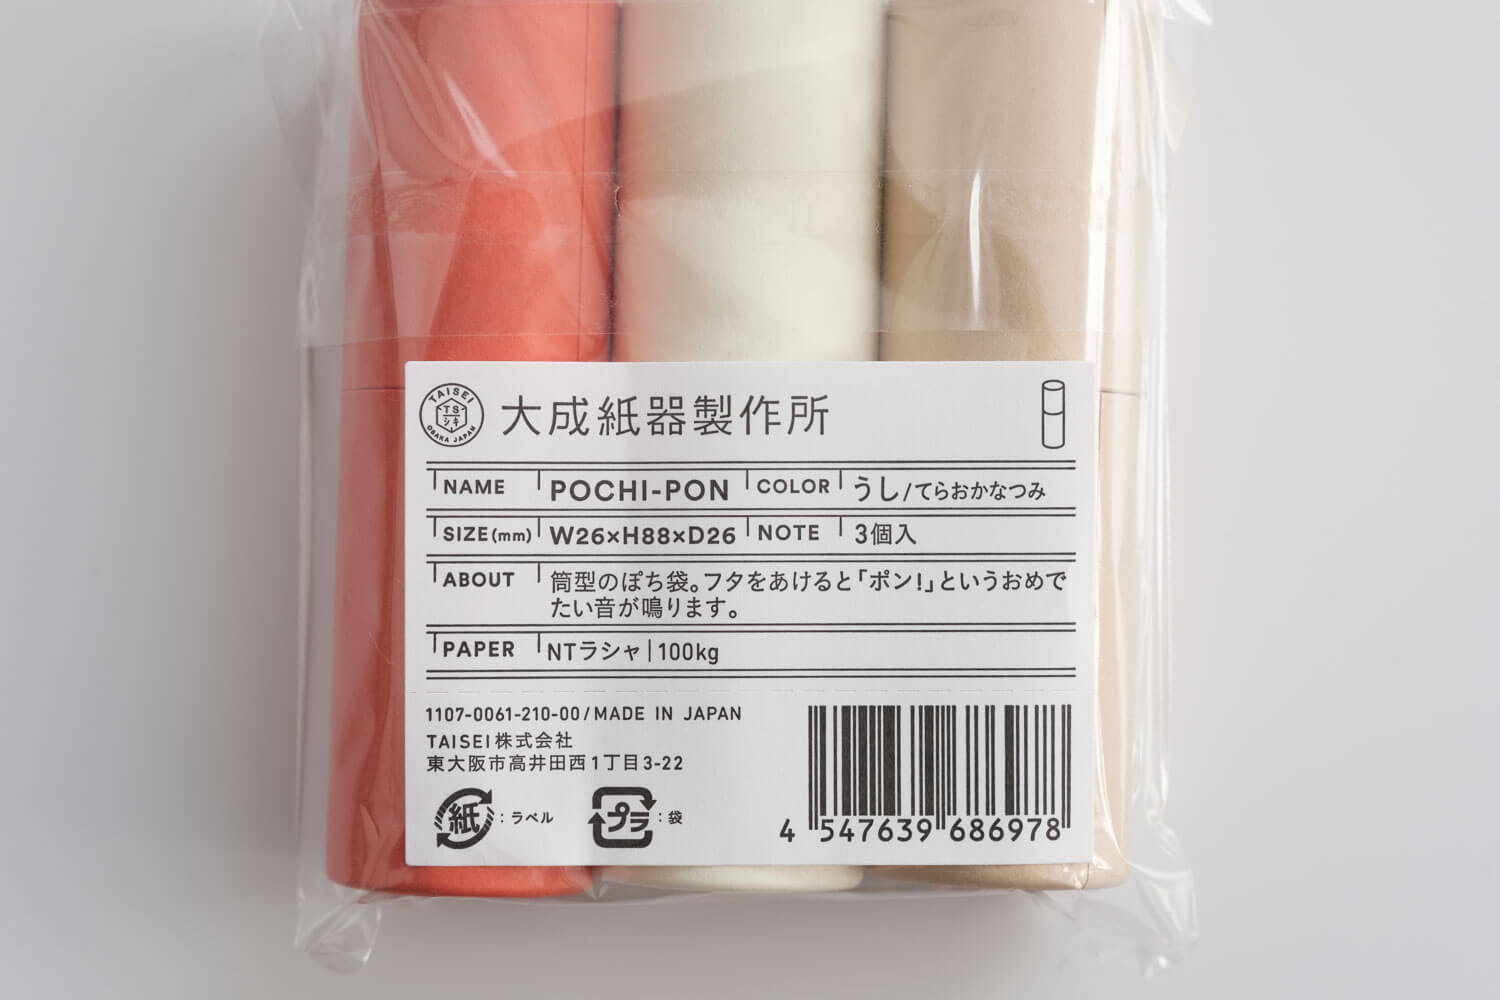 大成紙器製作所 POCHI-PON うしポチ袋の素材